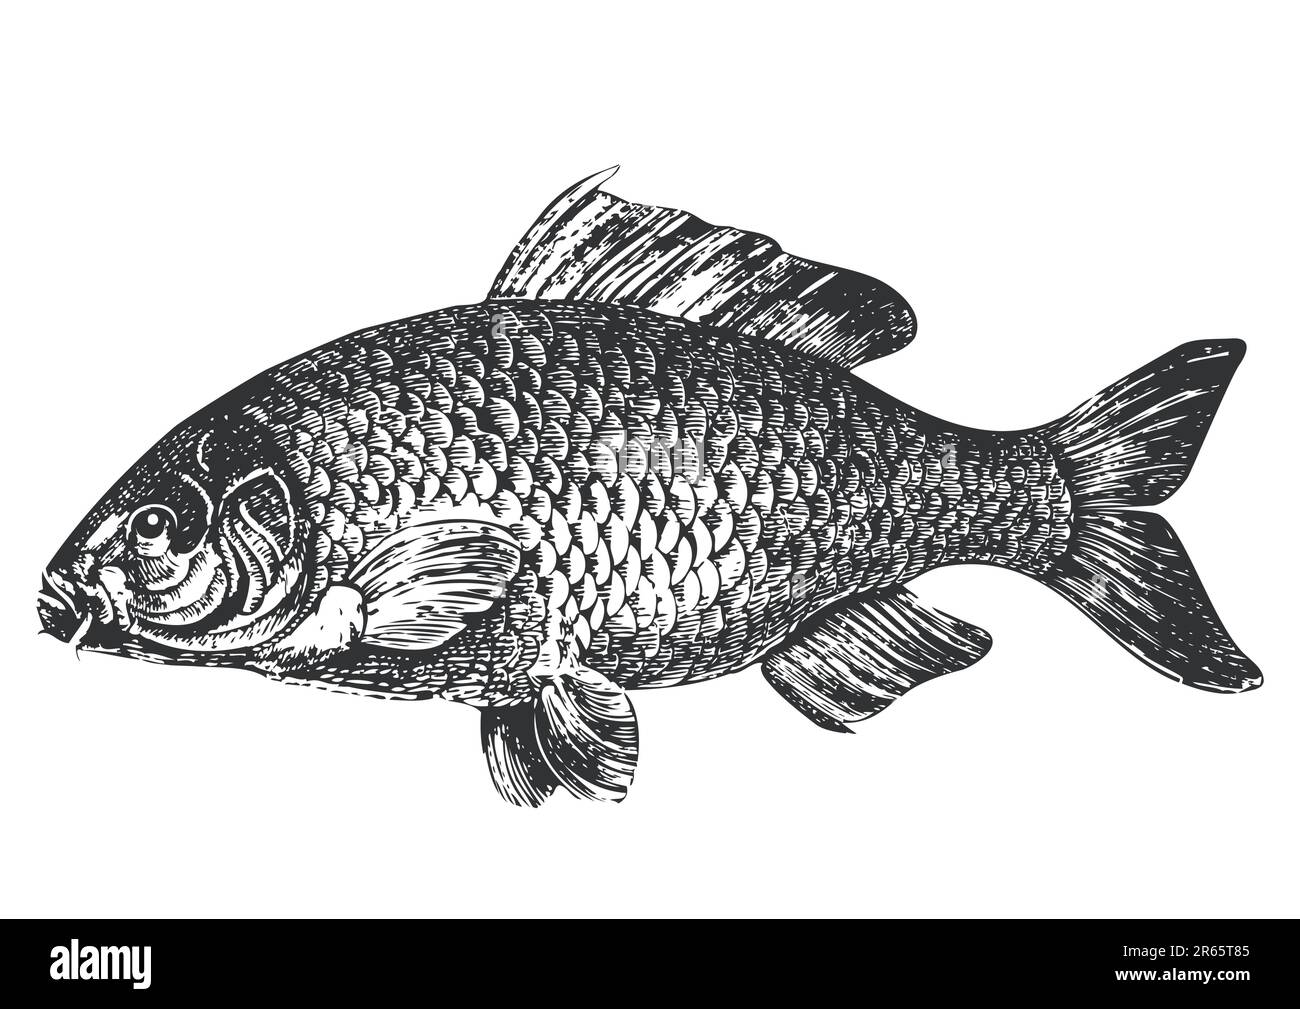 Illustrazione della carpa di pesce, Graphik antico, isolato su sfondo bianco, grafica vettoriale completamente scalabile incluso EPS v8 e 300 dpi JPG. Illustrazione Vettoriale